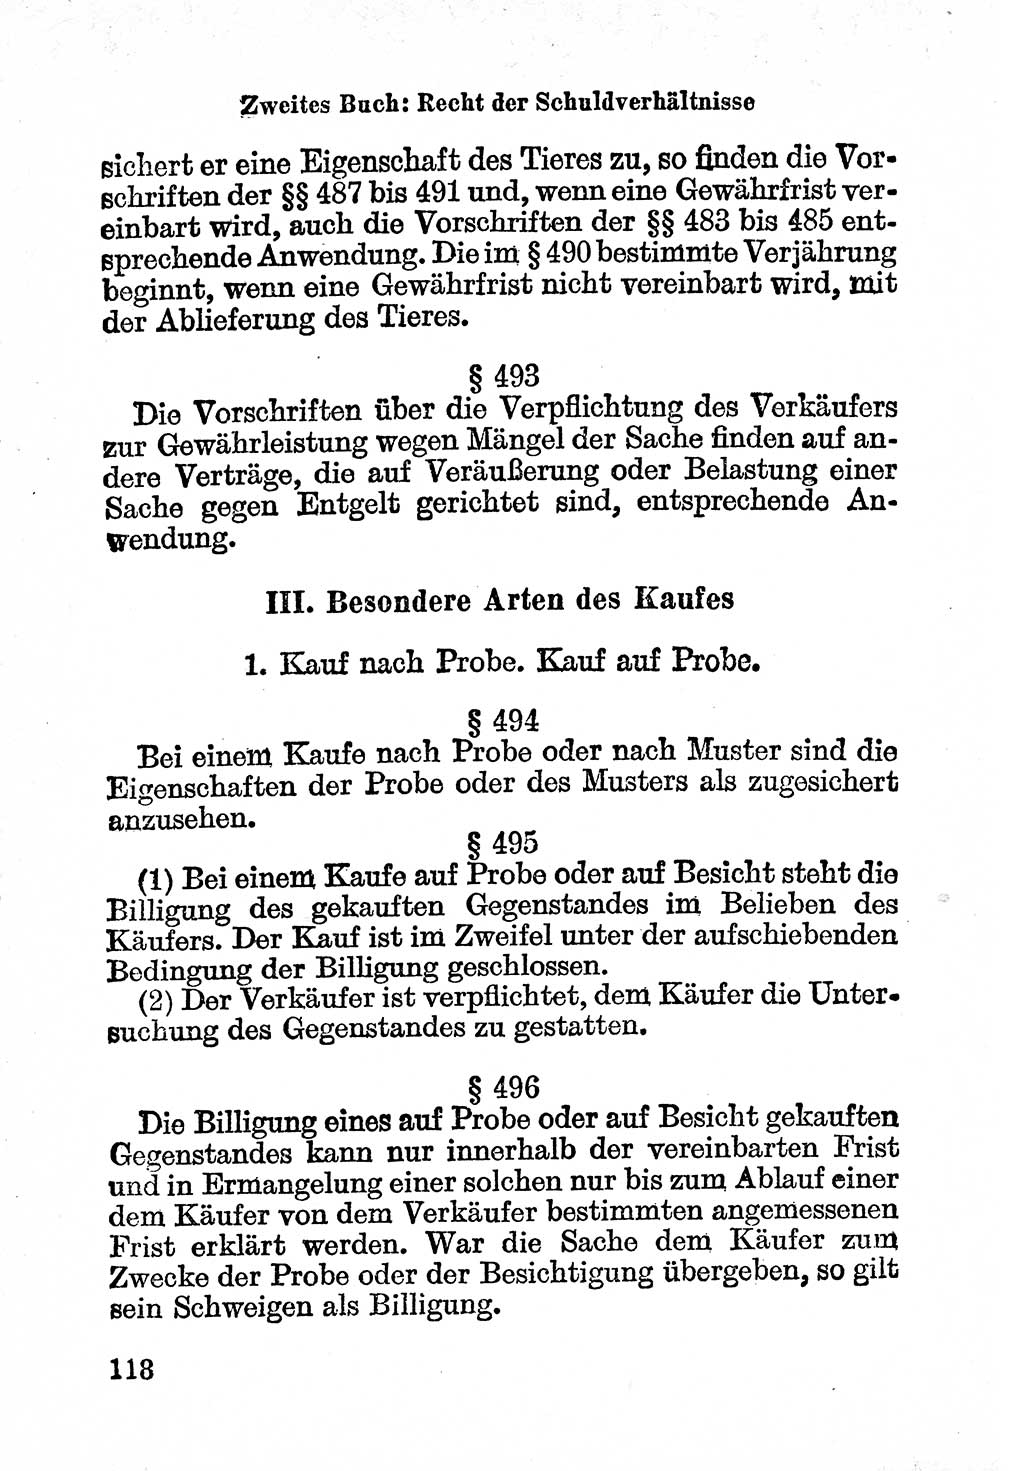 Bürgerliches Gesetzbuch (BGB) nebst wichtigen Nebengesetzen [Deutsche Demokratische Republik (DDR)] 1956, Seite 118 (BGB Nebenges. DDR 1956, S. 118)